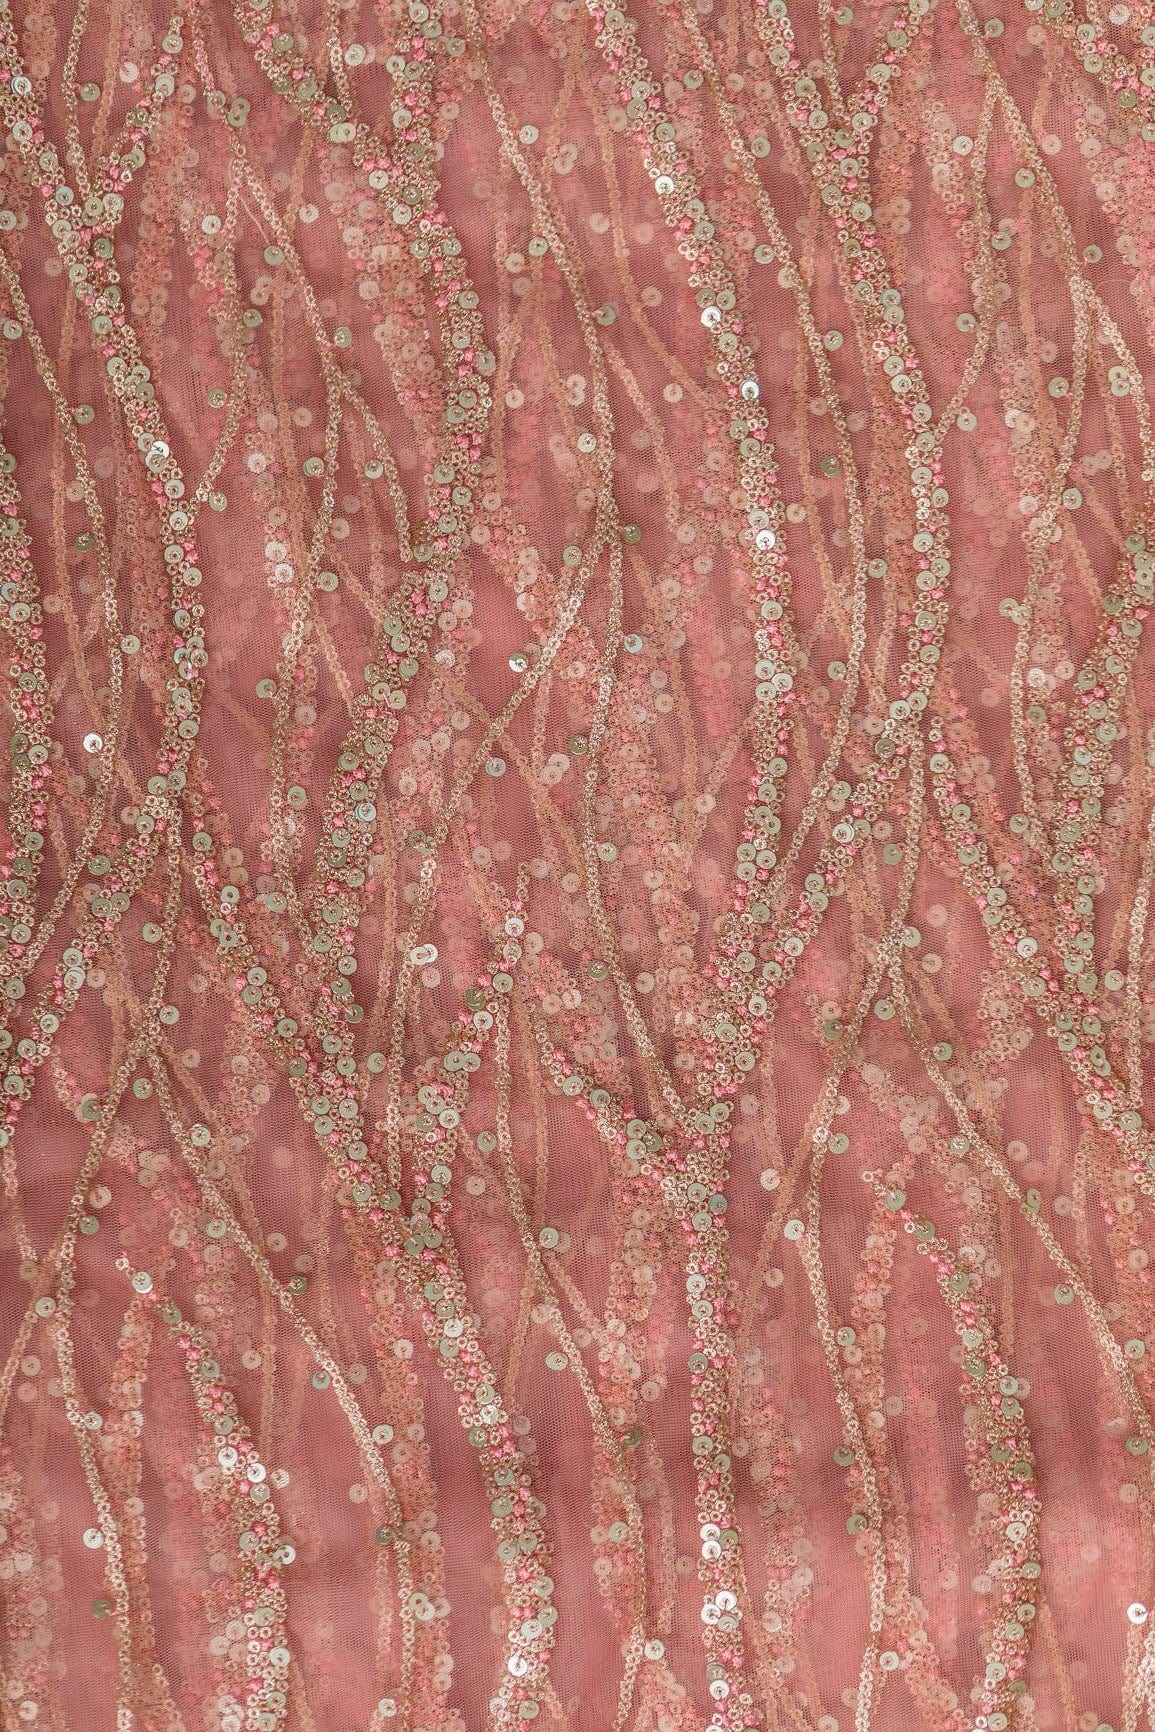 doeraa LEHENGA SET Baby Pink And White Unstitched Lehenga Set Fabric (3 Piece)